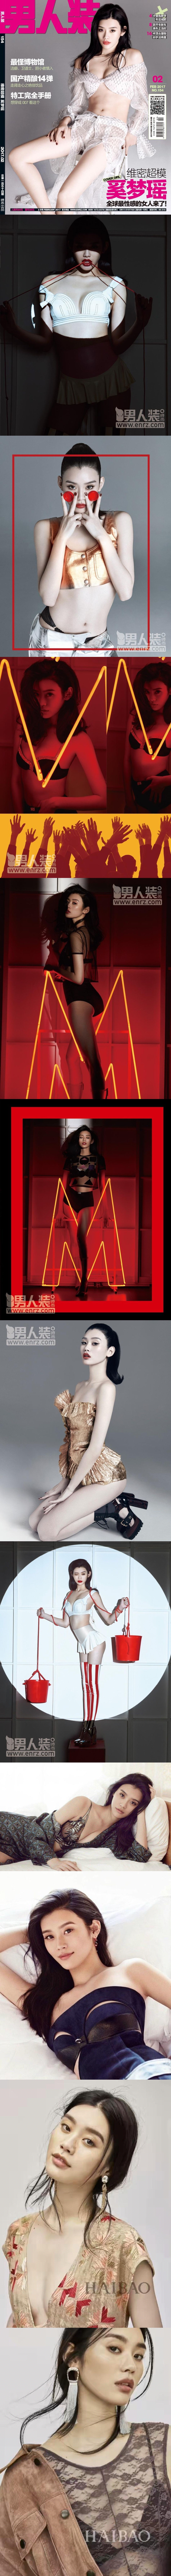 超模奚梦瑶icon在杂志《男人装》上发布了一组性感写真,引发了网友们